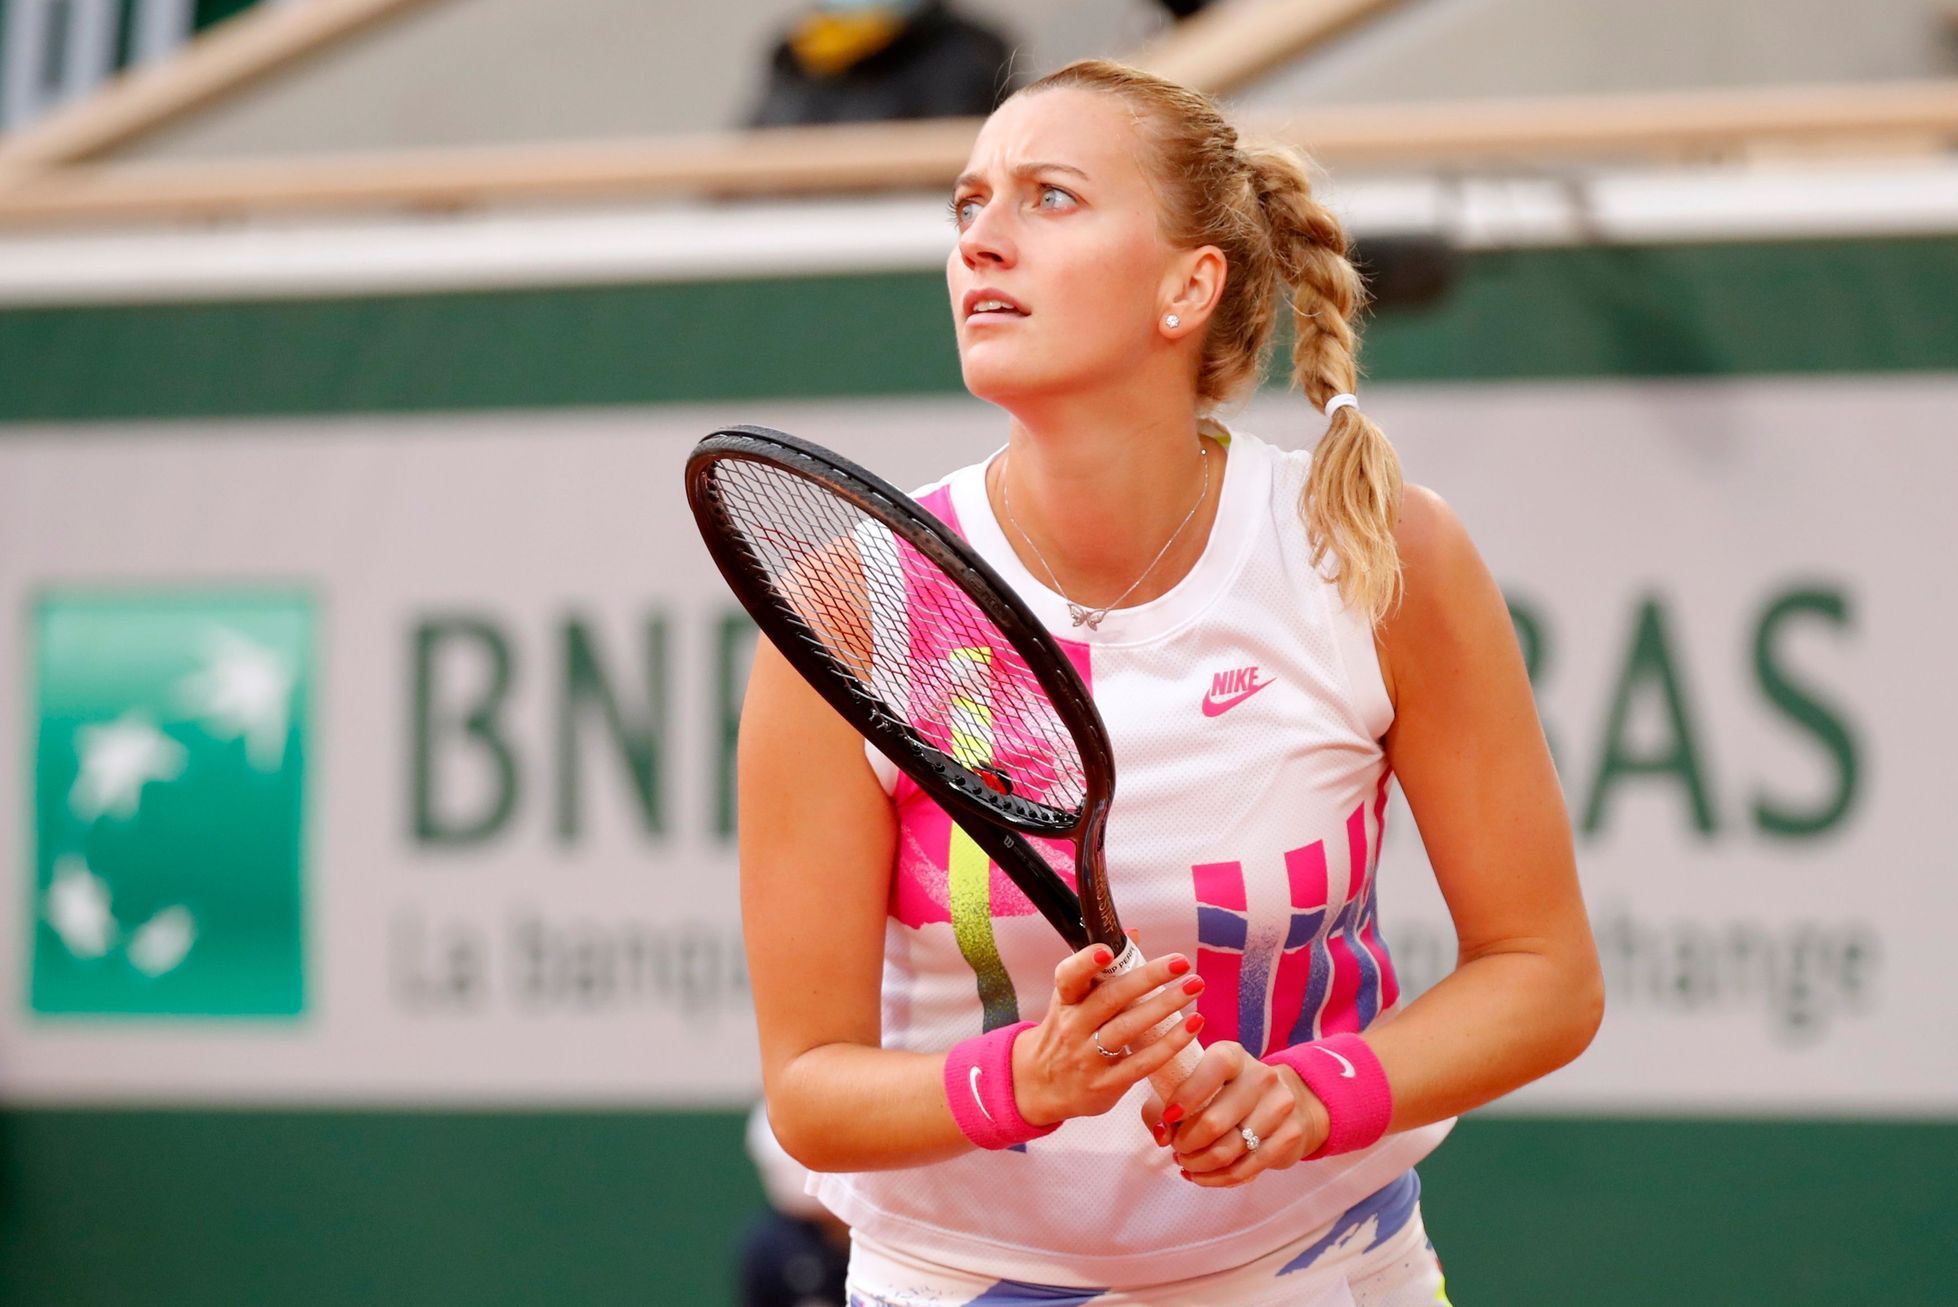 French Open 2020 Petra Kvitová